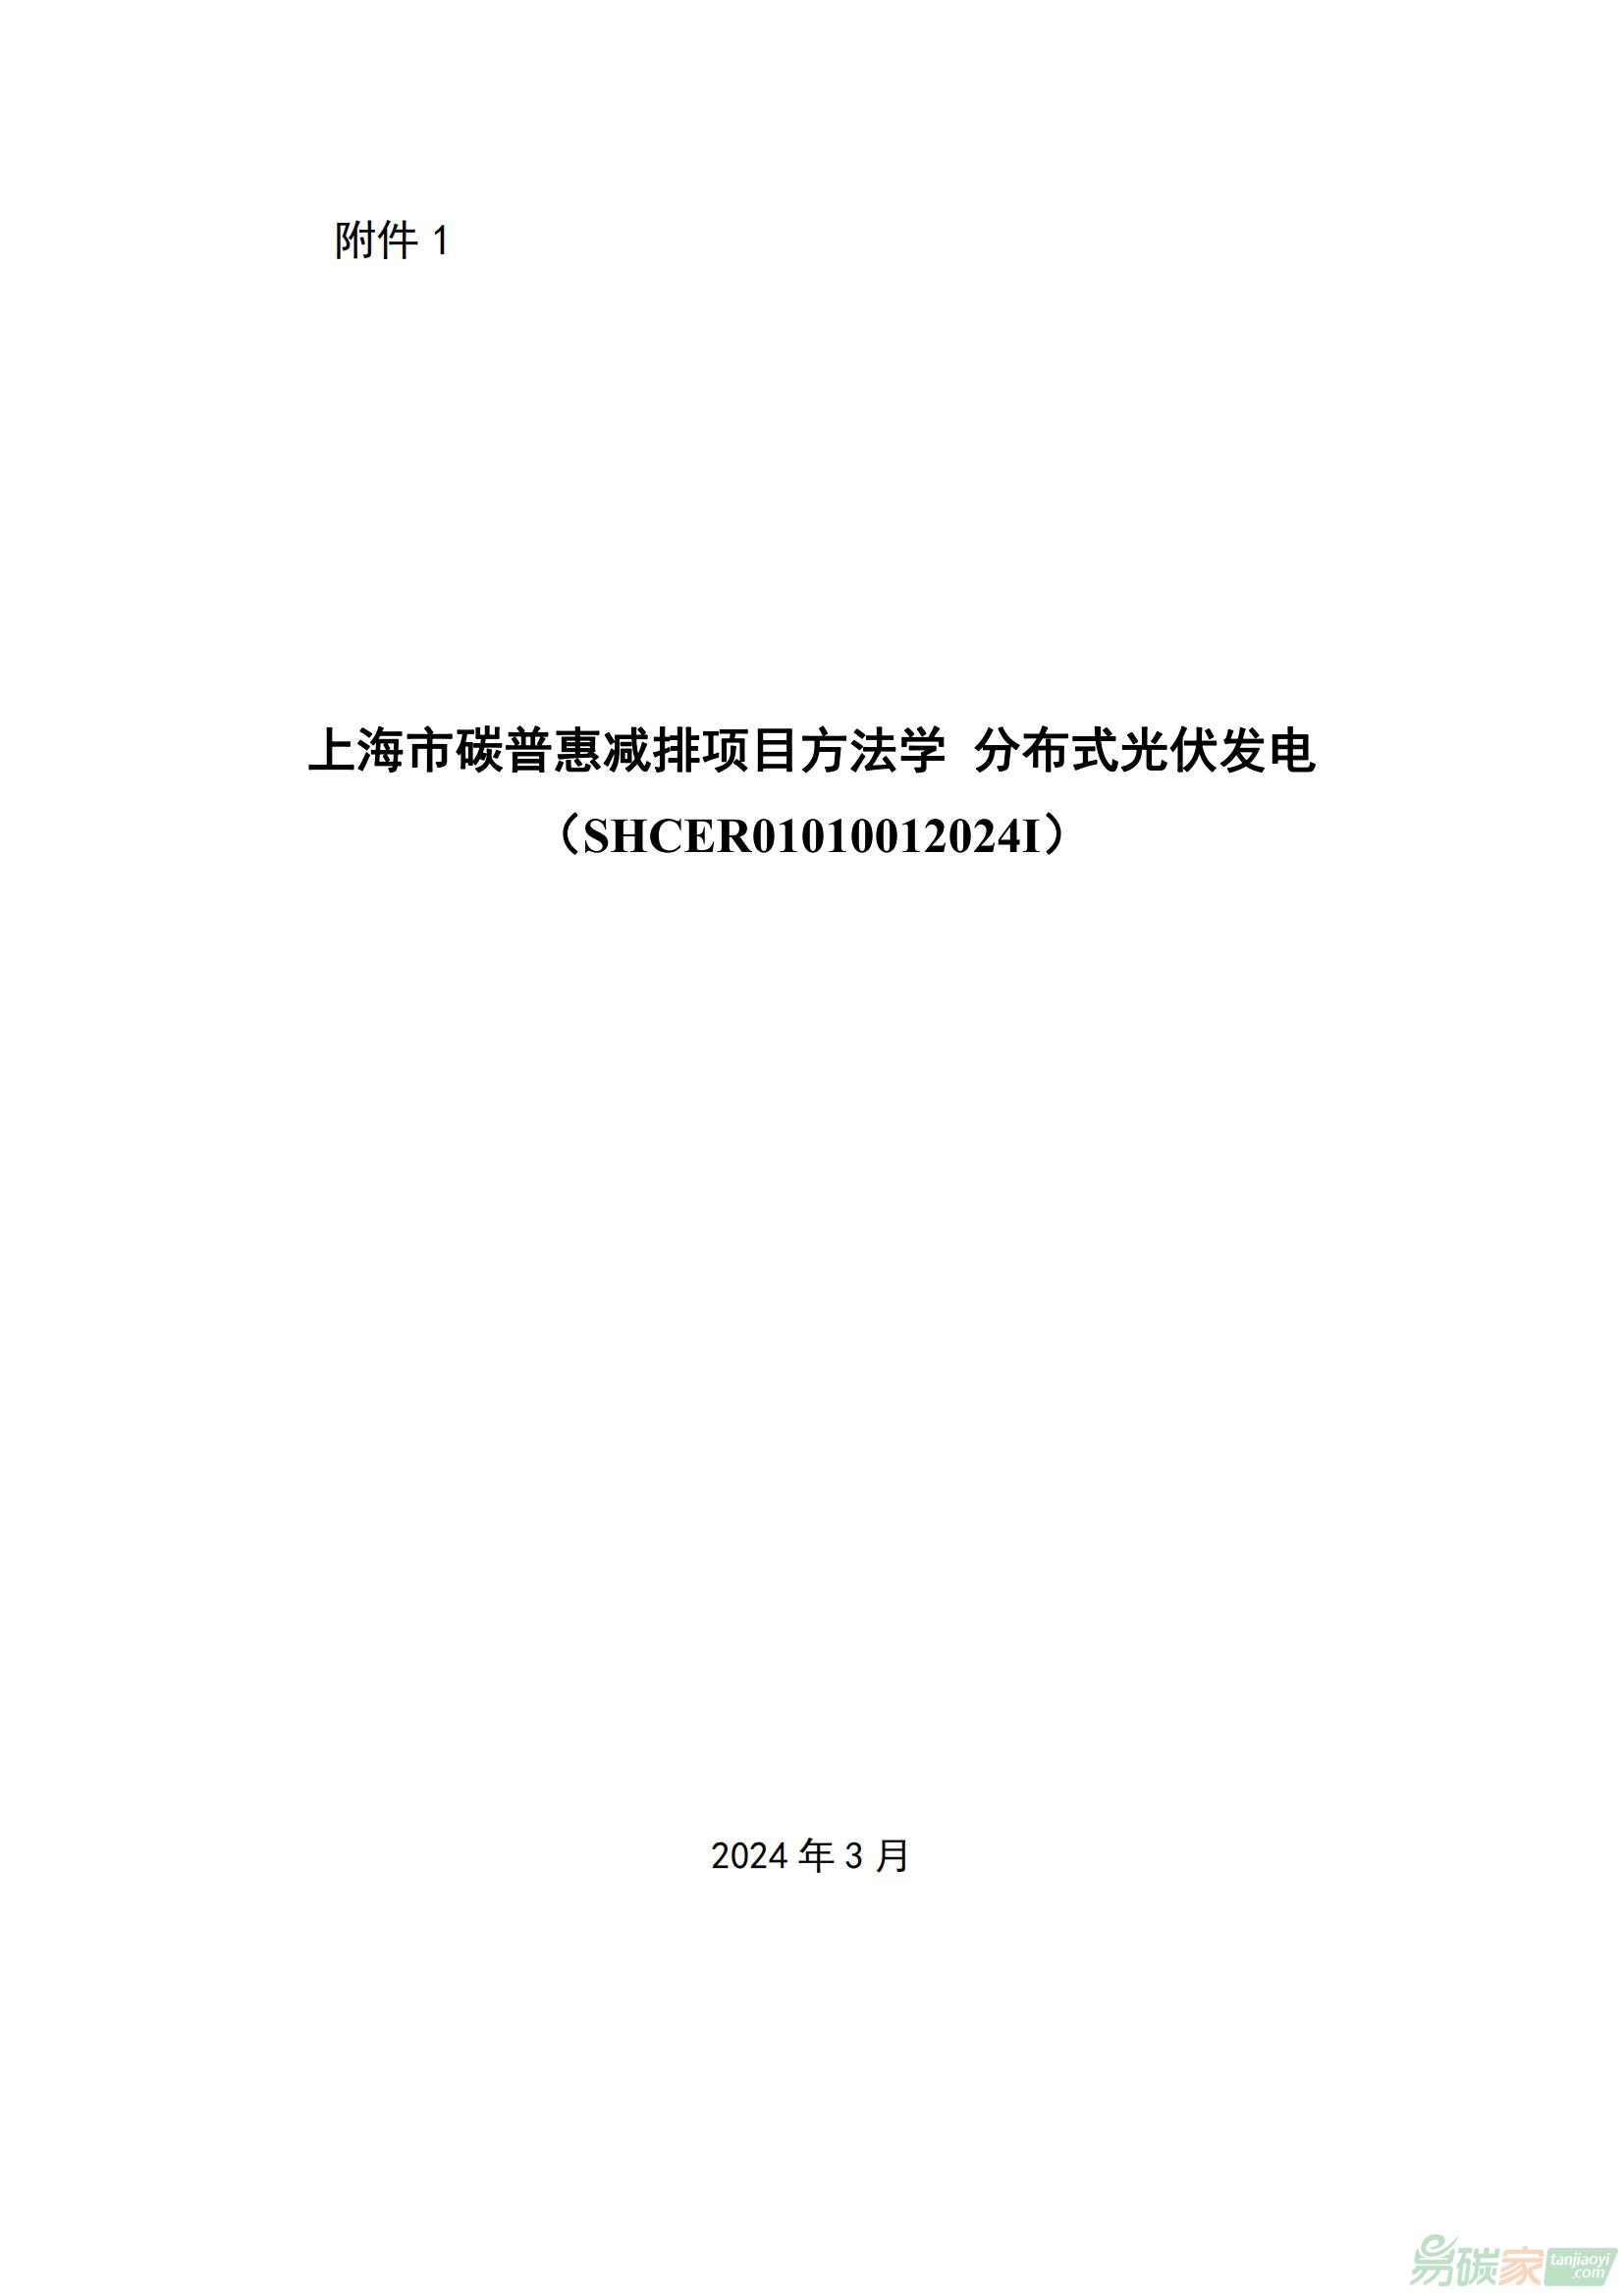 《上海市碳普惠减排项目方法学 分布式光伏发电（SHCER01010012024I）》